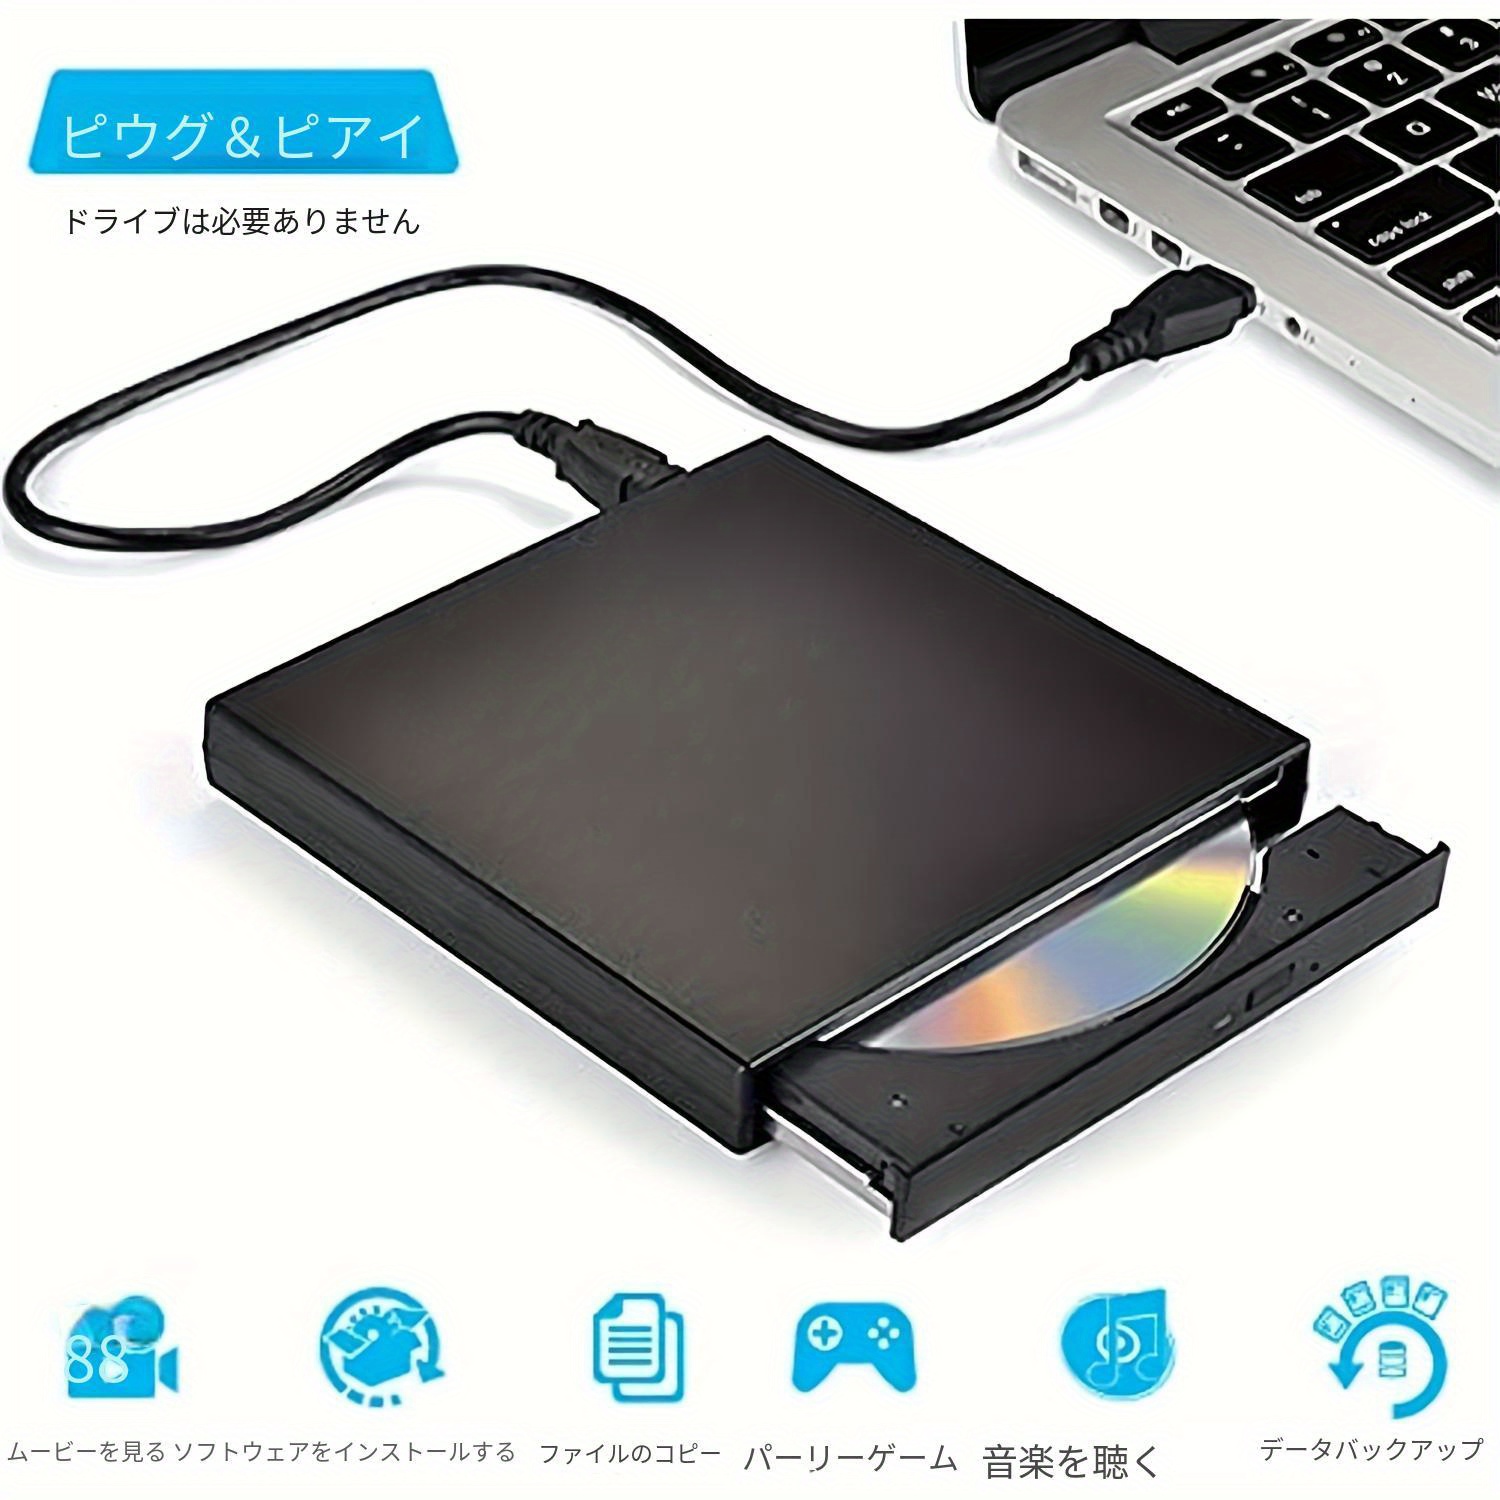 外付けCD DVDドライブ USB2.0スリム ポータブル 外付けCD-RWドライブ DVD-RWバーナー ライター  ノートパソコン/デスクトップコンピュータ用